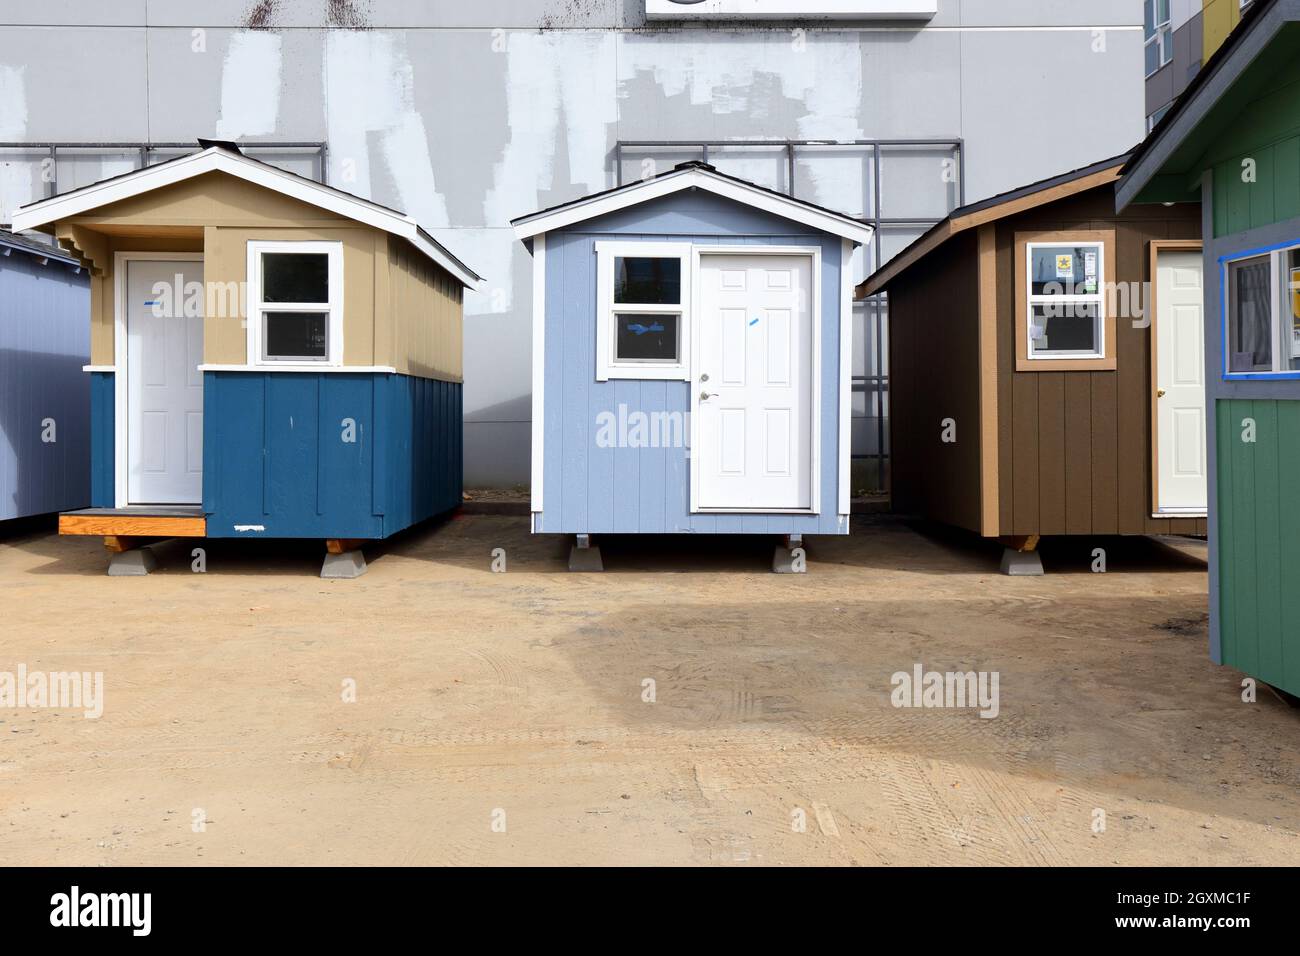 Rosies Tiny House Village temporäre Obdachlosenheime werden im U District, Seattle, WA, gebaut. [Siehe zusätzliche Informationen für die vollständige Beschriftung] Stockfoto